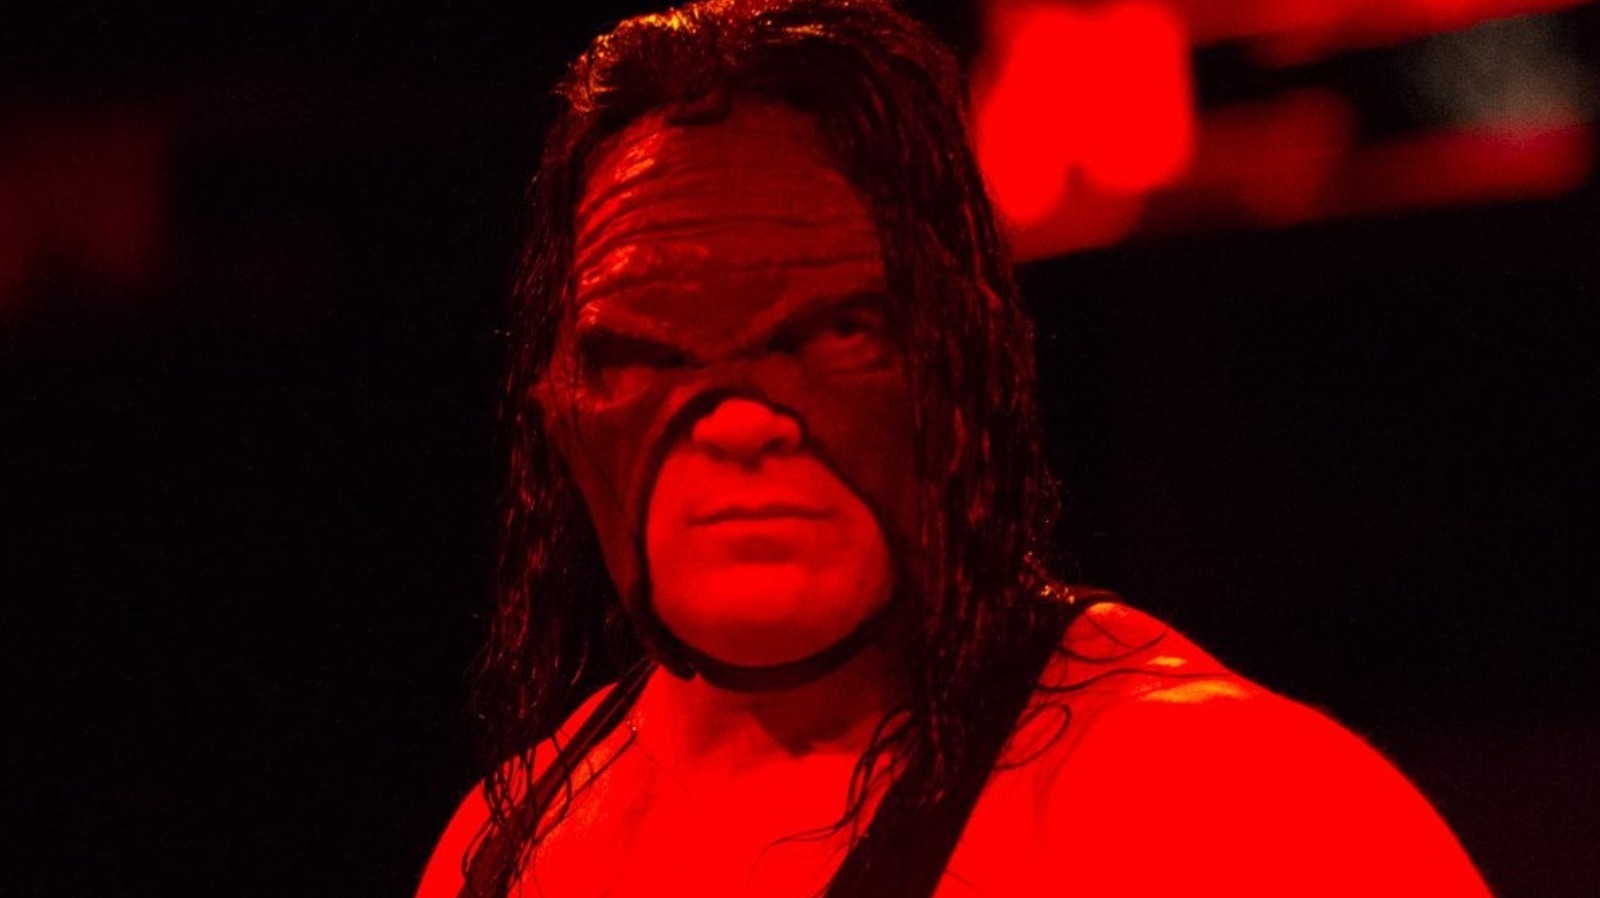 La biografía de WWE Legends de A&E sobre Kane obtiene la audiencia más baja de la historia, los rivales también bajan